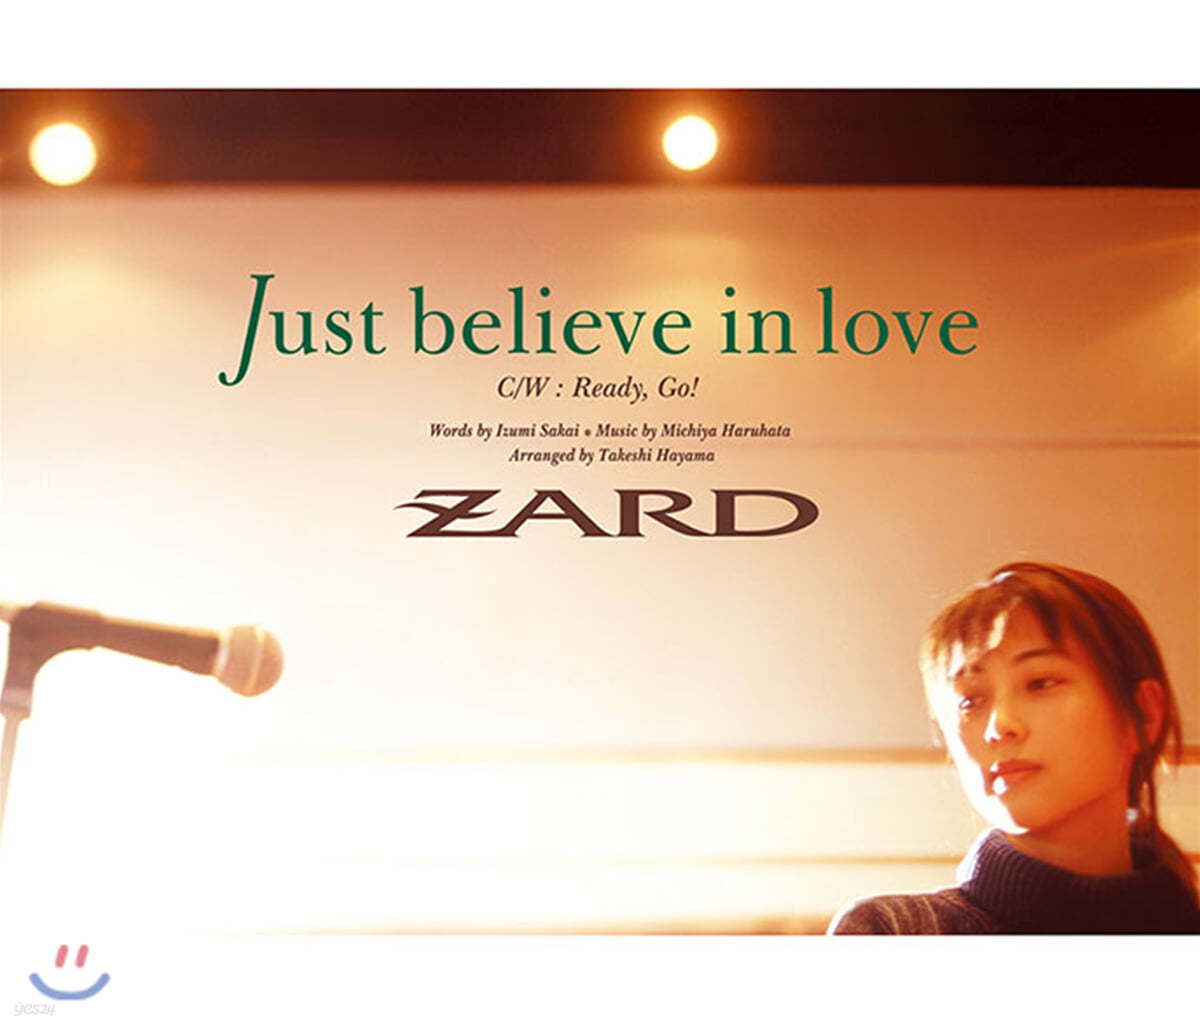 Zard (자드) - Just believe in love 